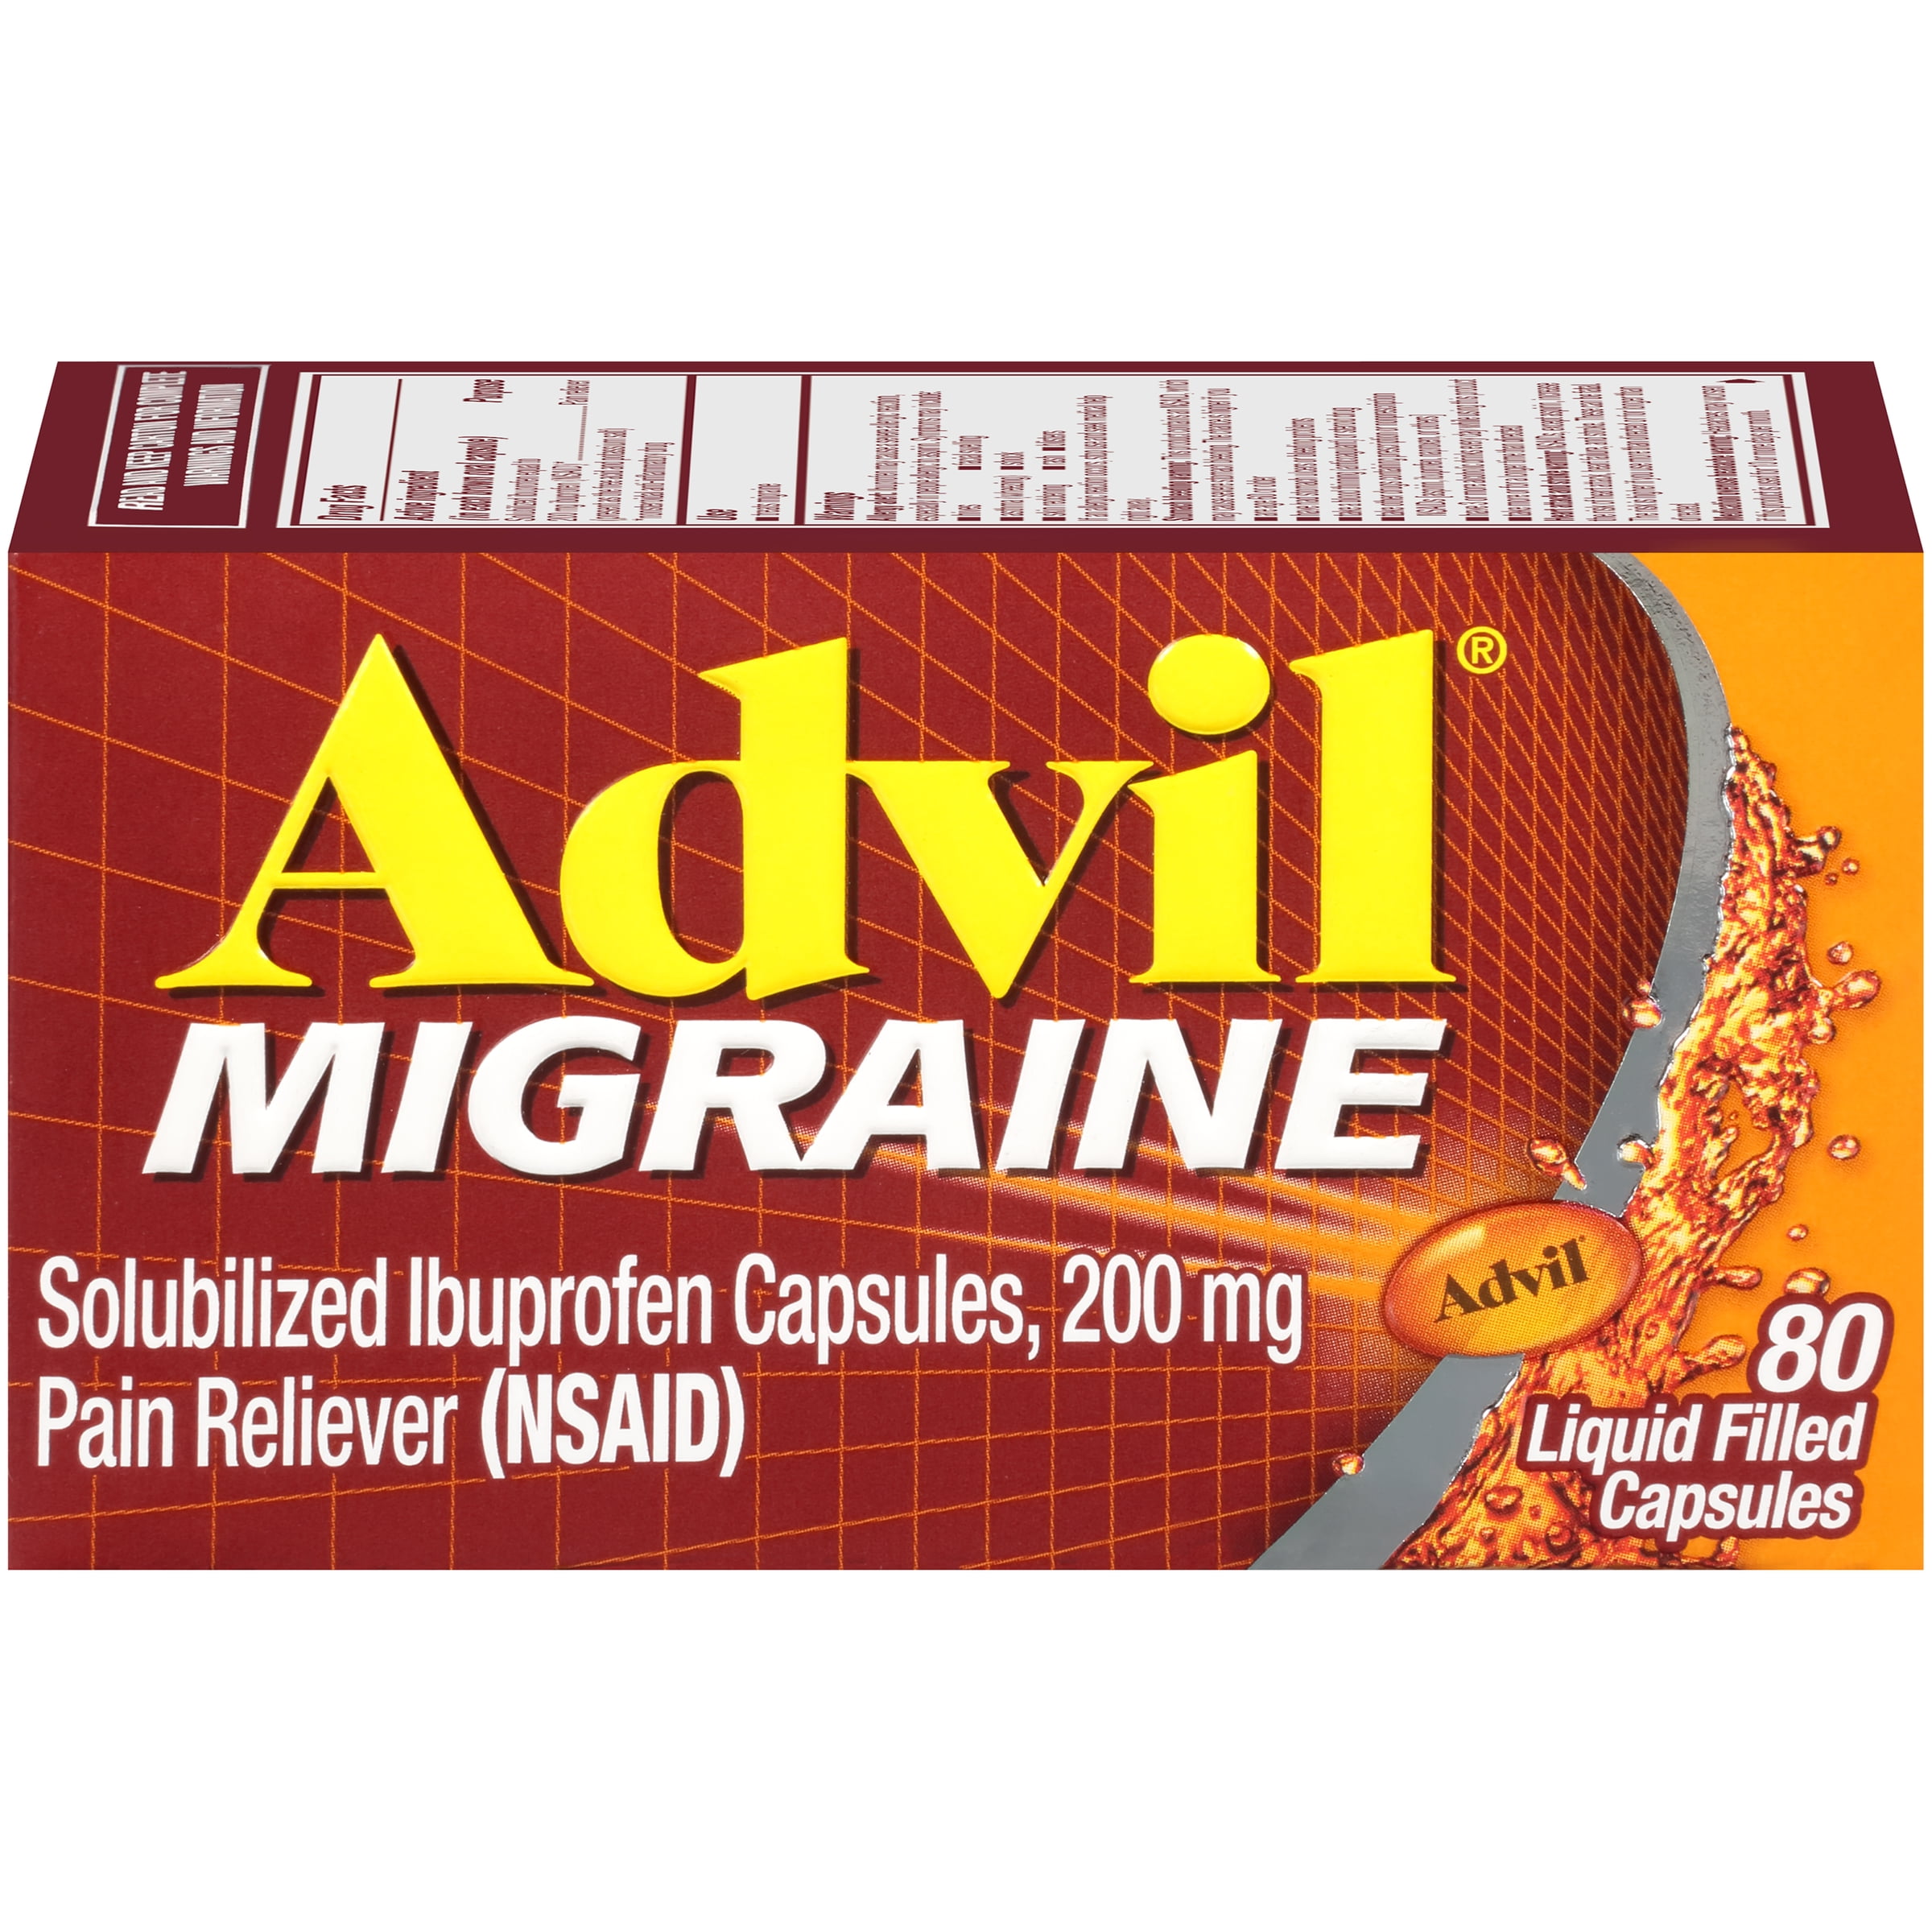 Advil Migraine 80 Count Pain Reliever Liquid Filled Capsules